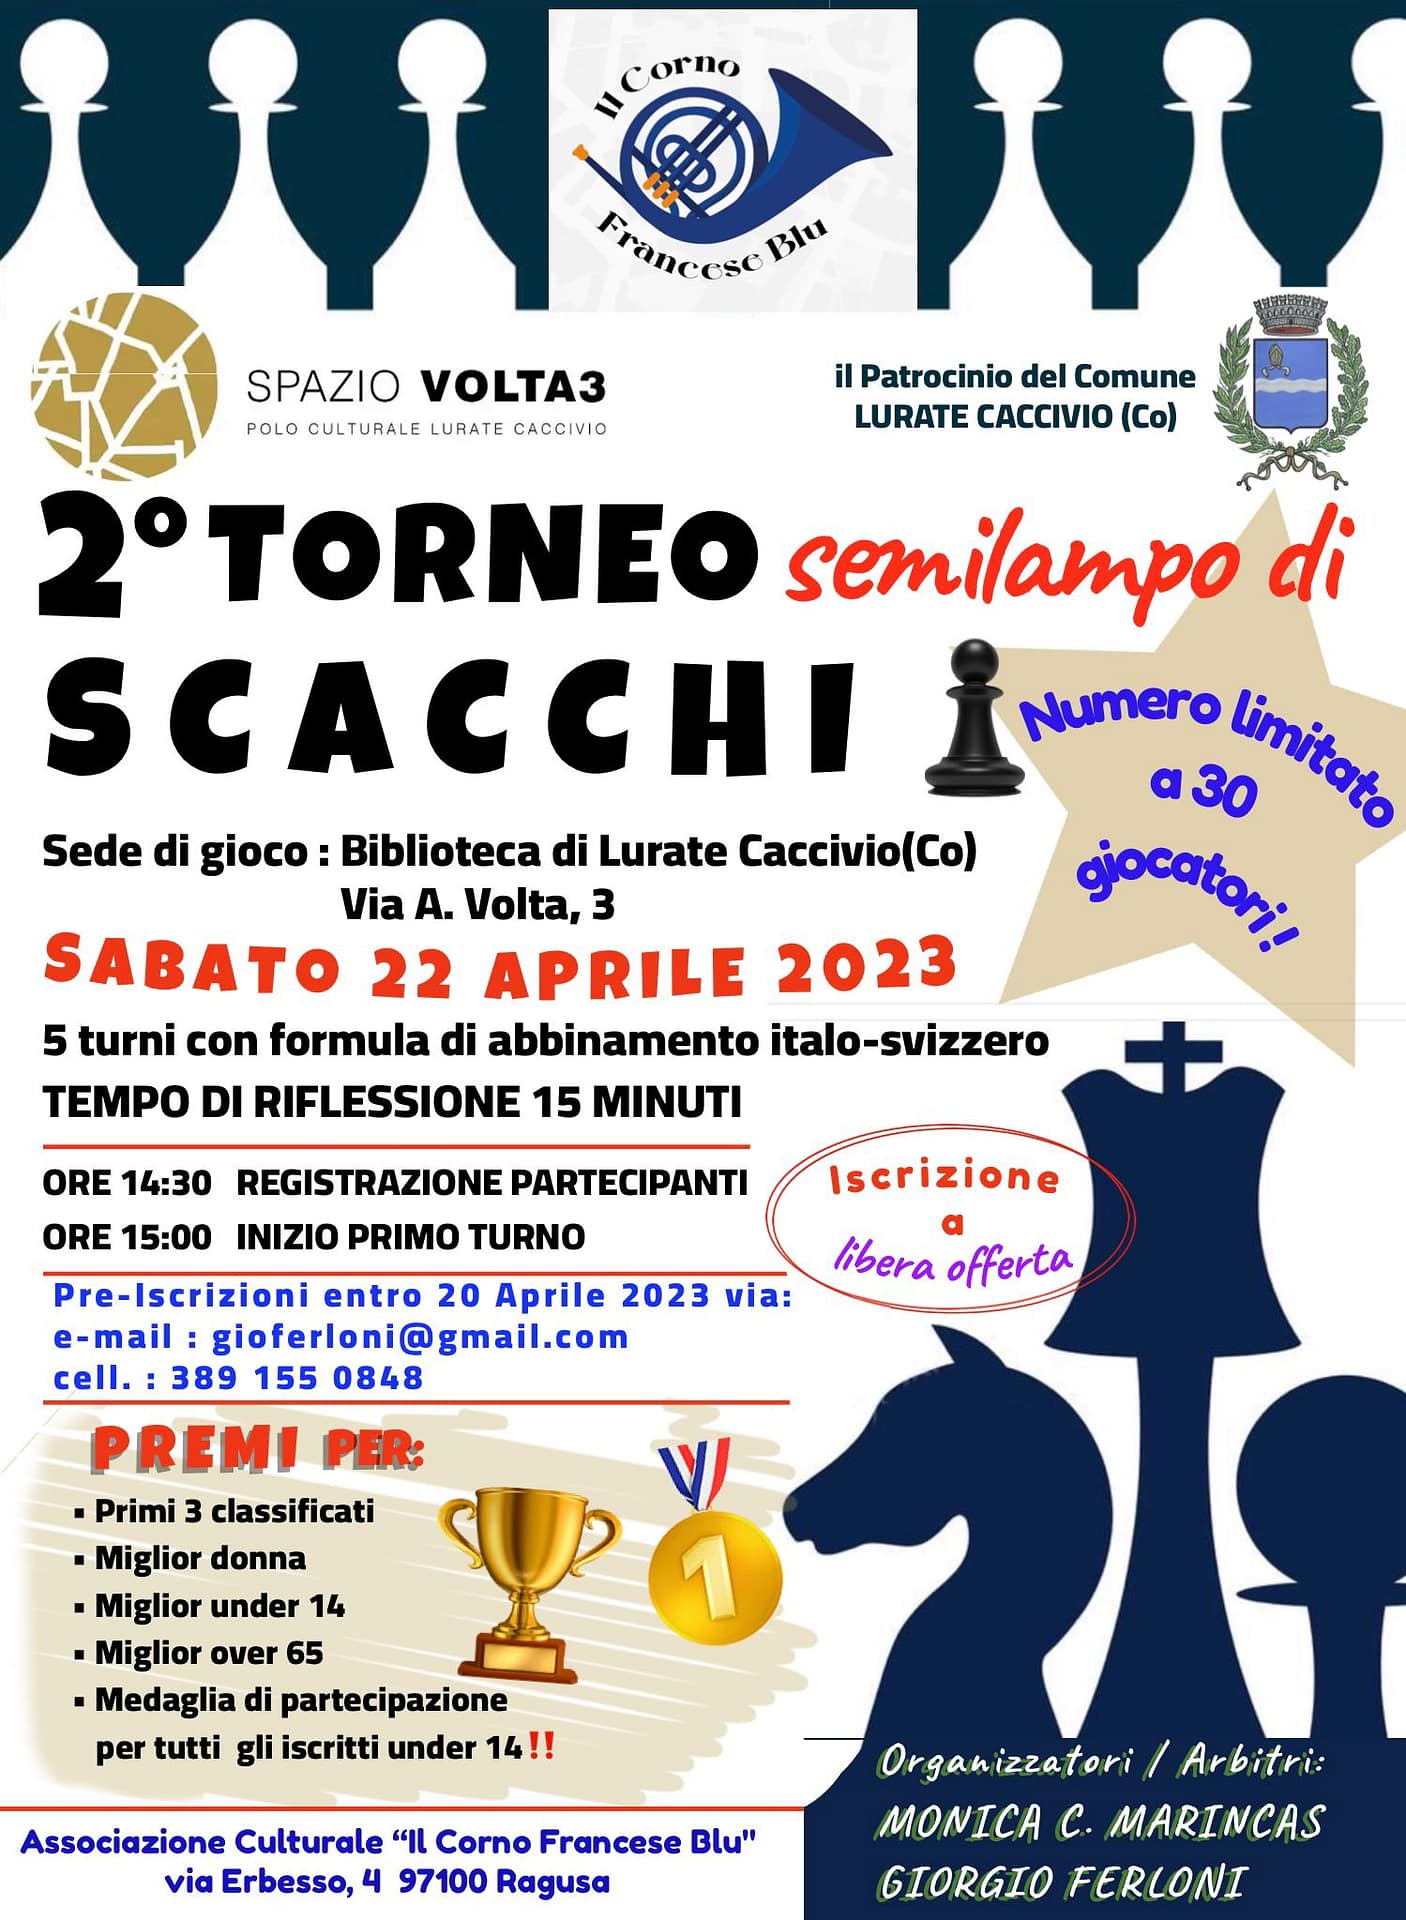 Torneo scacchistico di Lurate Caccivio sabato 
22 aprile 2023